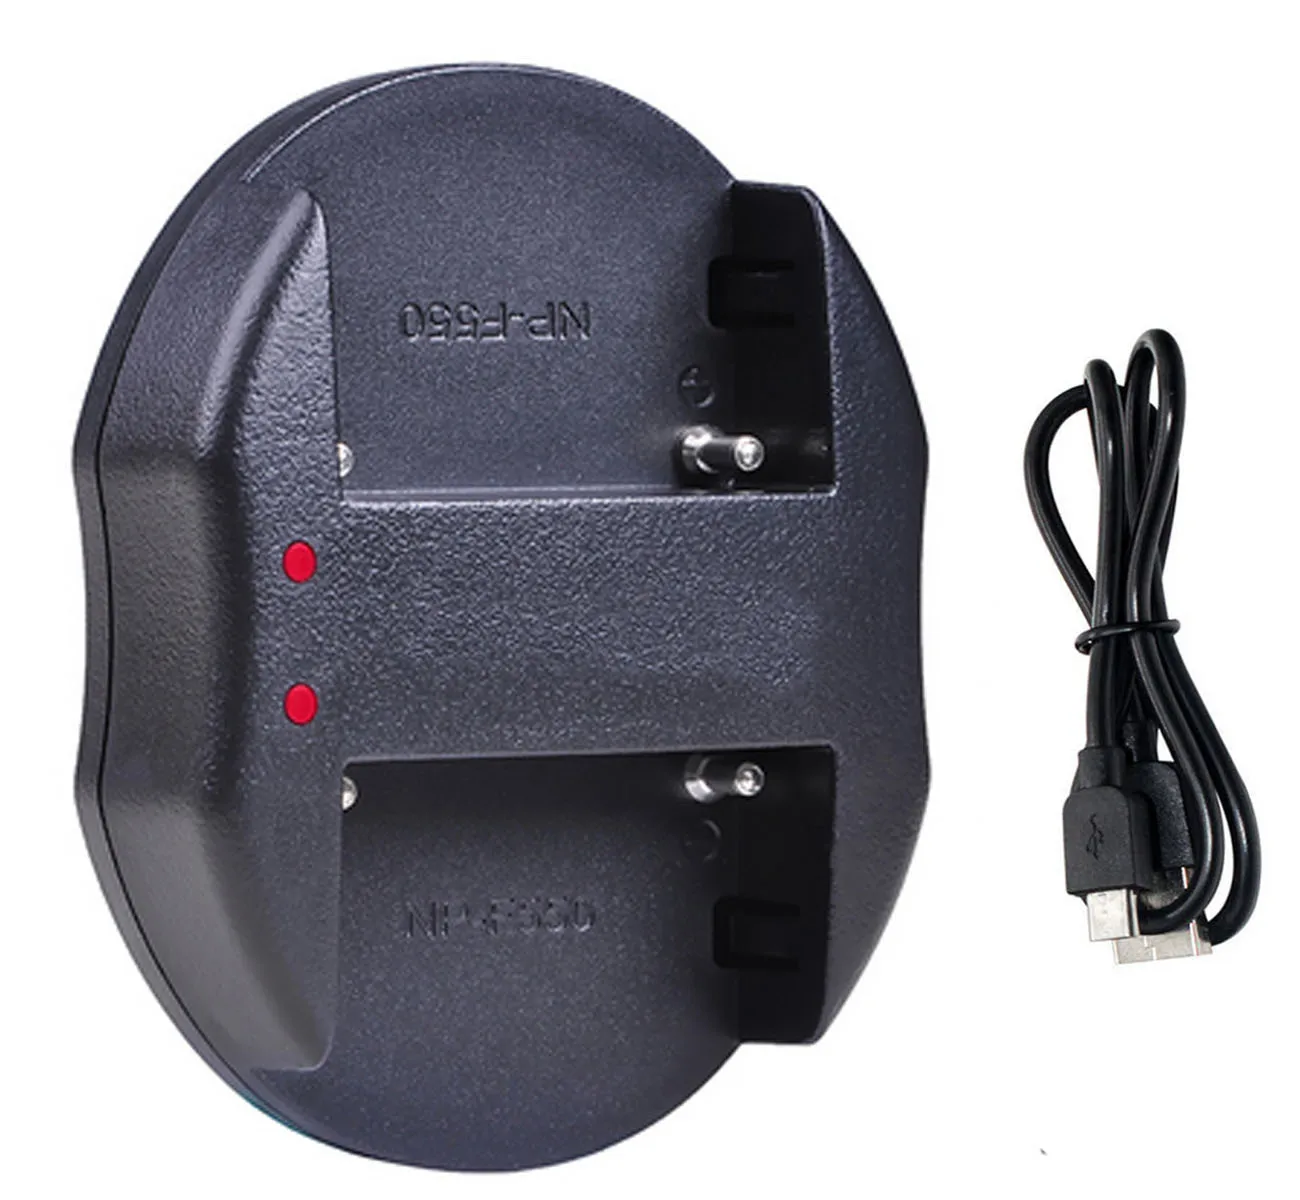 AC адаптер питания зарядное устройство для sony DCR-TRV240E, DCR-TRV241E, DCR-TRV245E, DCR-TRV255E, DCR-TRV265E, DCR-TRV285E, Handycam видеокамеры